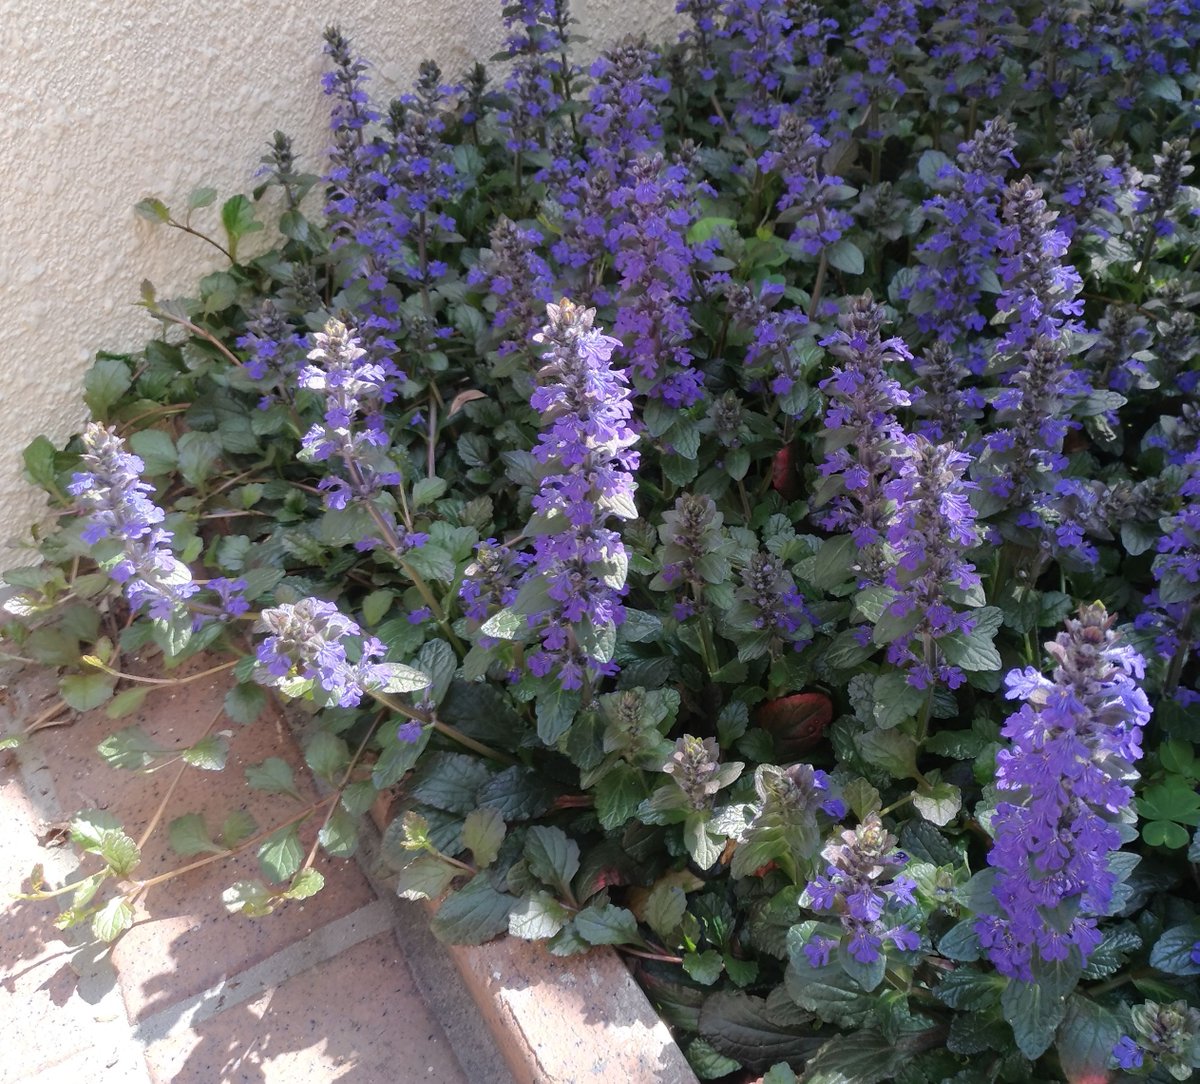 こころんグリーン در توییتر 知人宅の花壇に アジュガがたくさん咲いていました ブルーの花が集まって 一斉に開いています 青い絨毯がいっぱい広がっていました アジュガ ブルー 絨毯 花 春 園芸品種 春の花 園芸 ガーデニング 熊本市北区 熊本